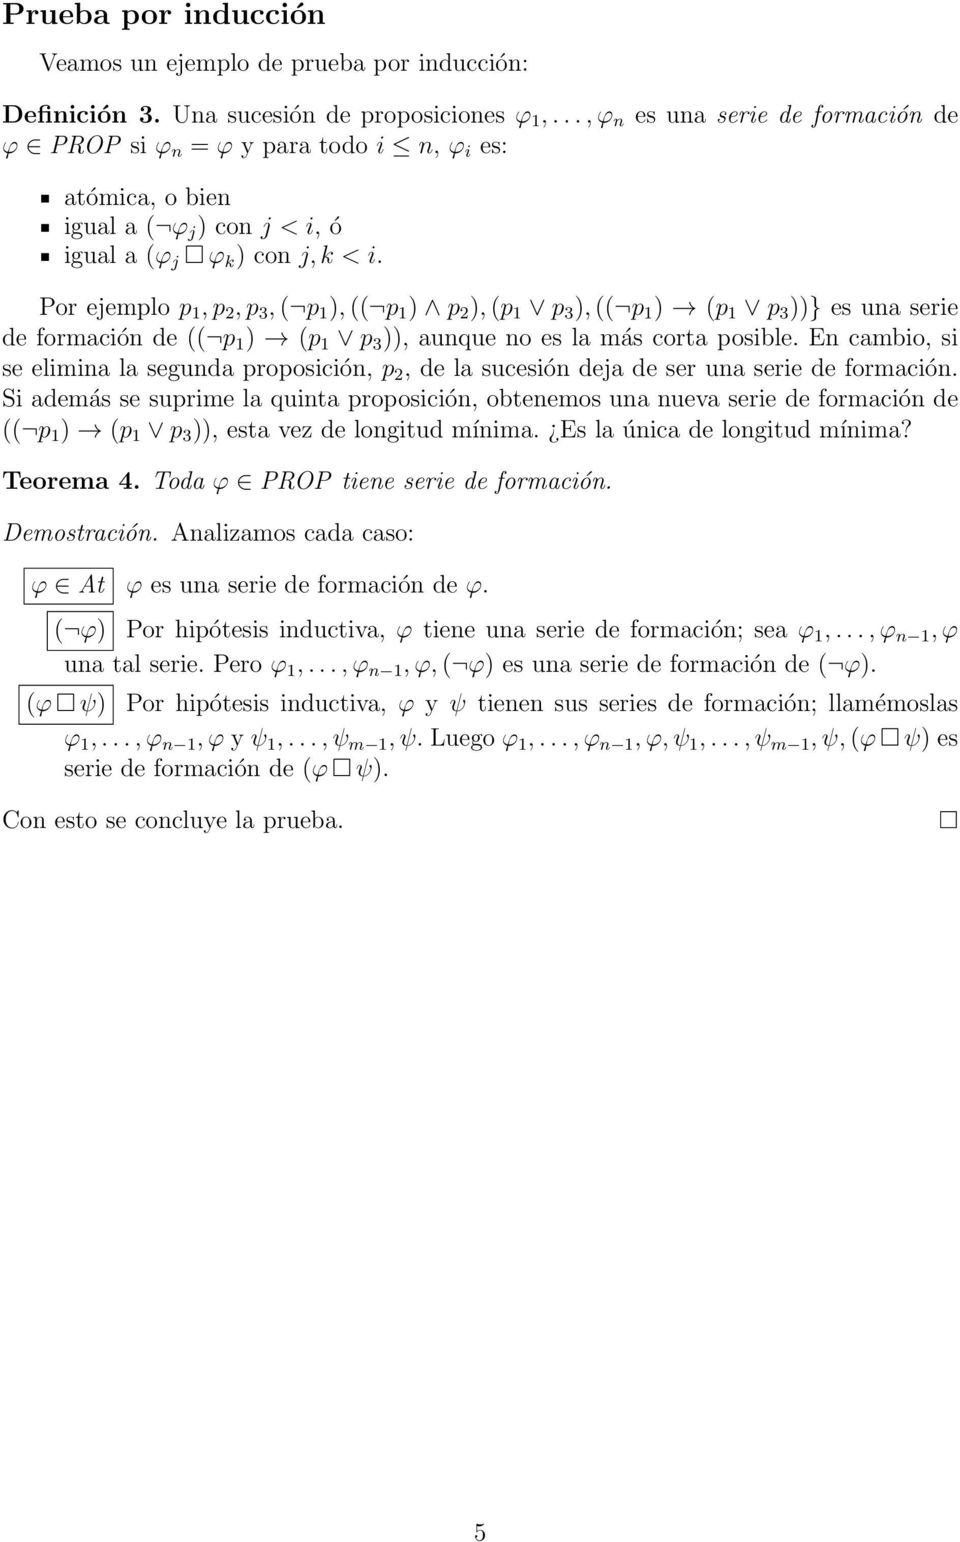 Por ejemplo p 1, p 2, p 3, ( p 1 ), (( p 1 ) p 2 ), (p 1 p 3 ), (( p 1 ) (p 1 p 3 ))} es una serie de formación de (( p 1 ) (p 1 p 3 )), aunque no es la más corta posible.